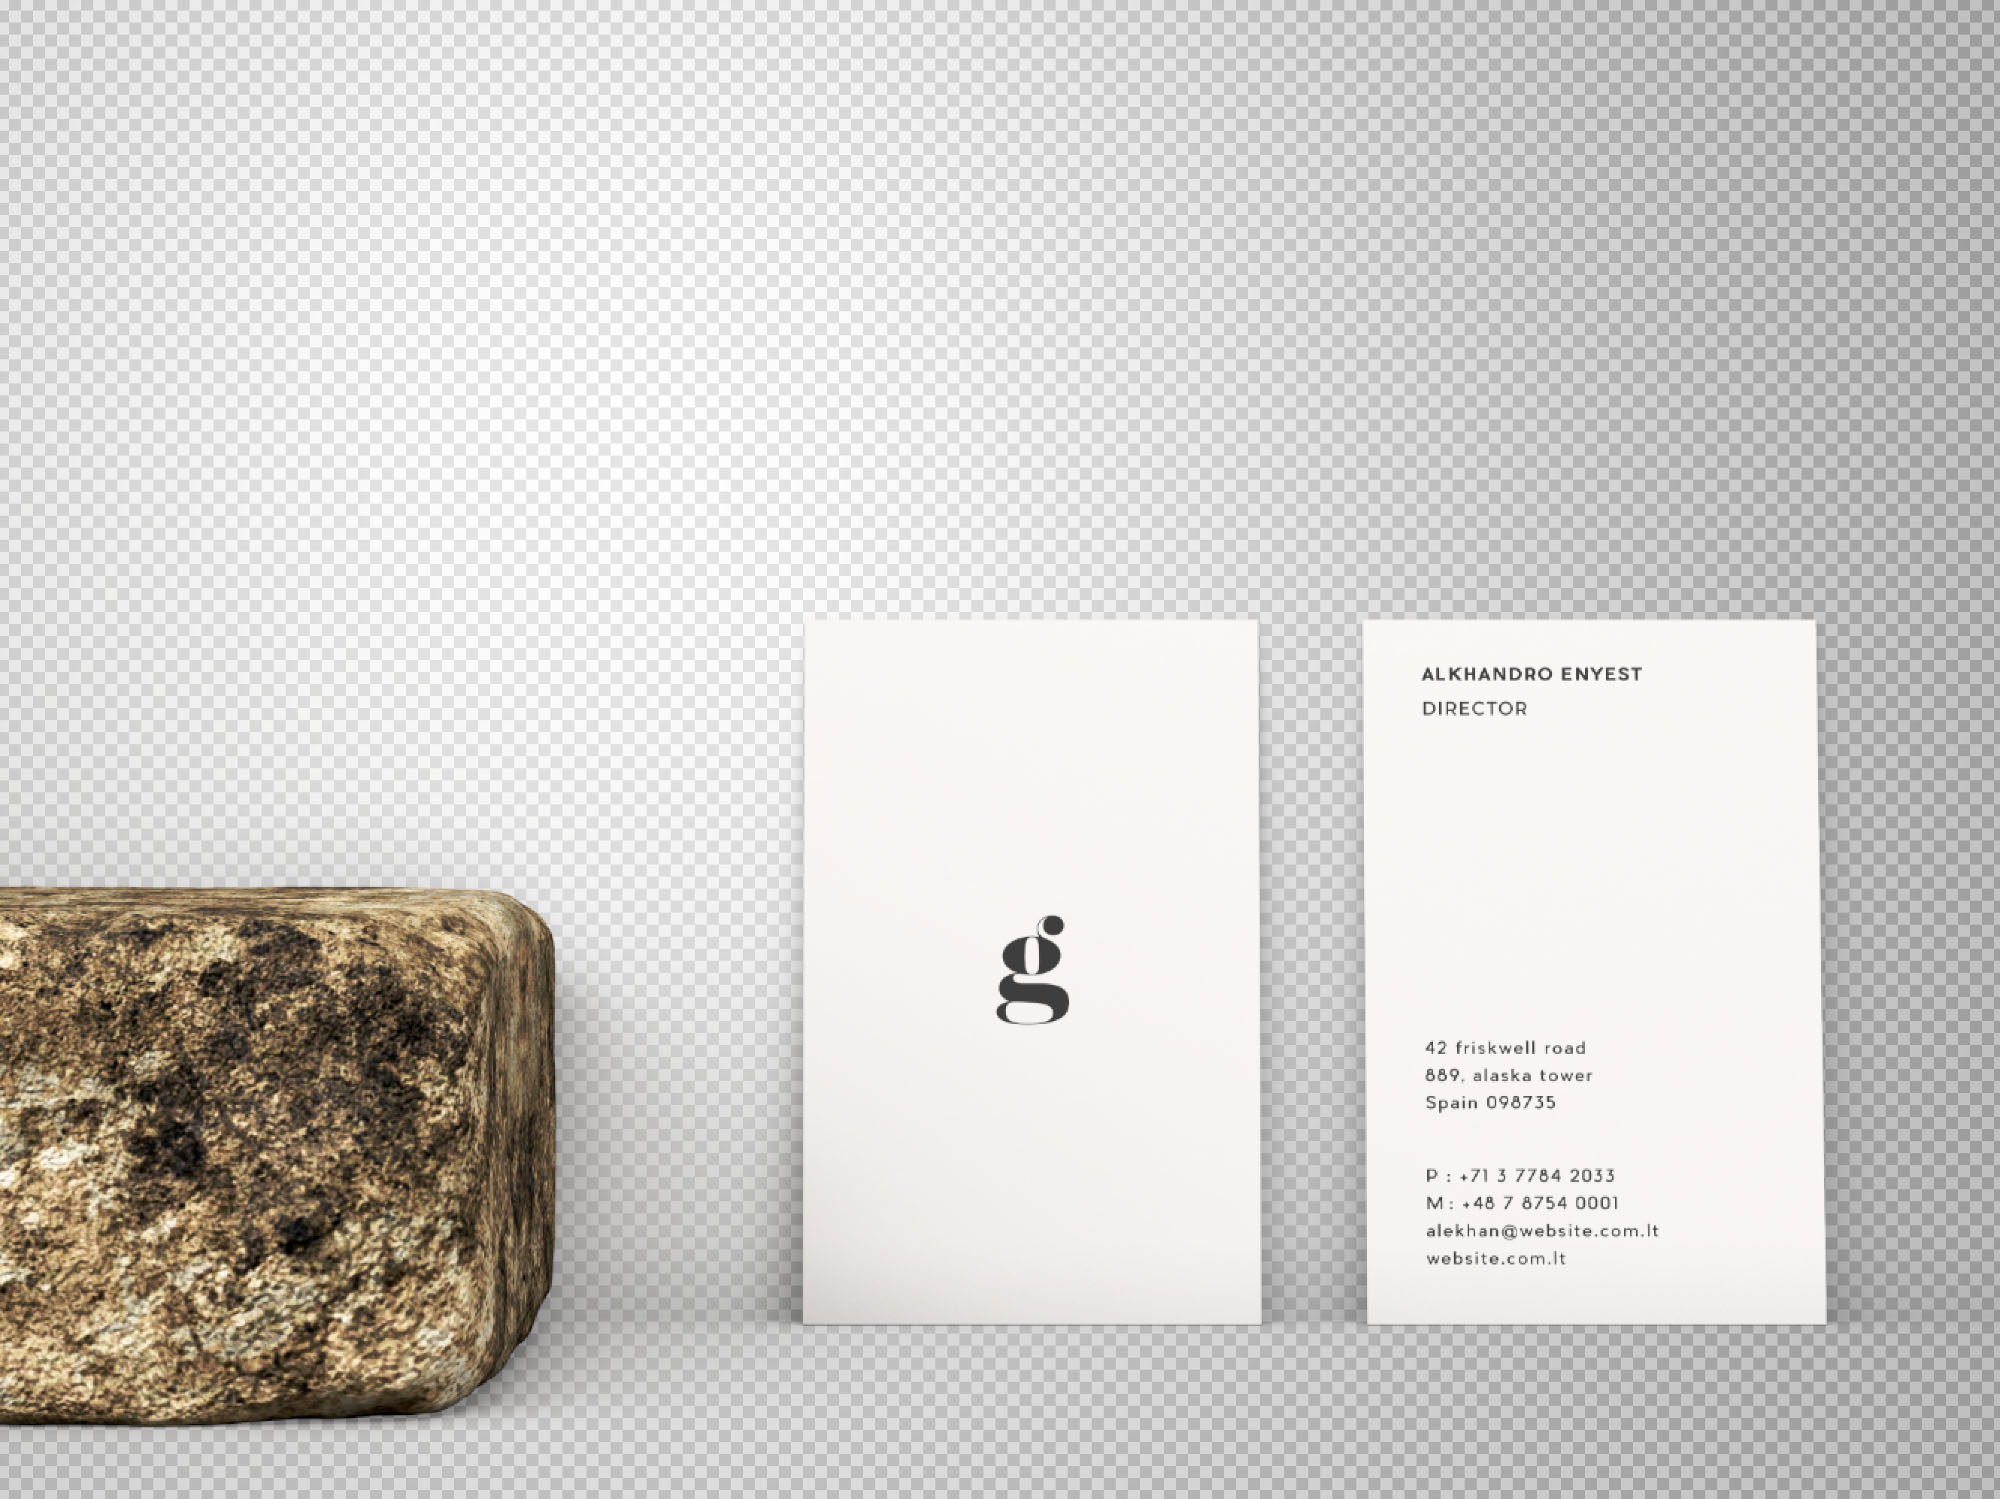 竖版设计企业名片正背面效果图样机 Vertical Business Card Mockup – Front & Back插图(1)